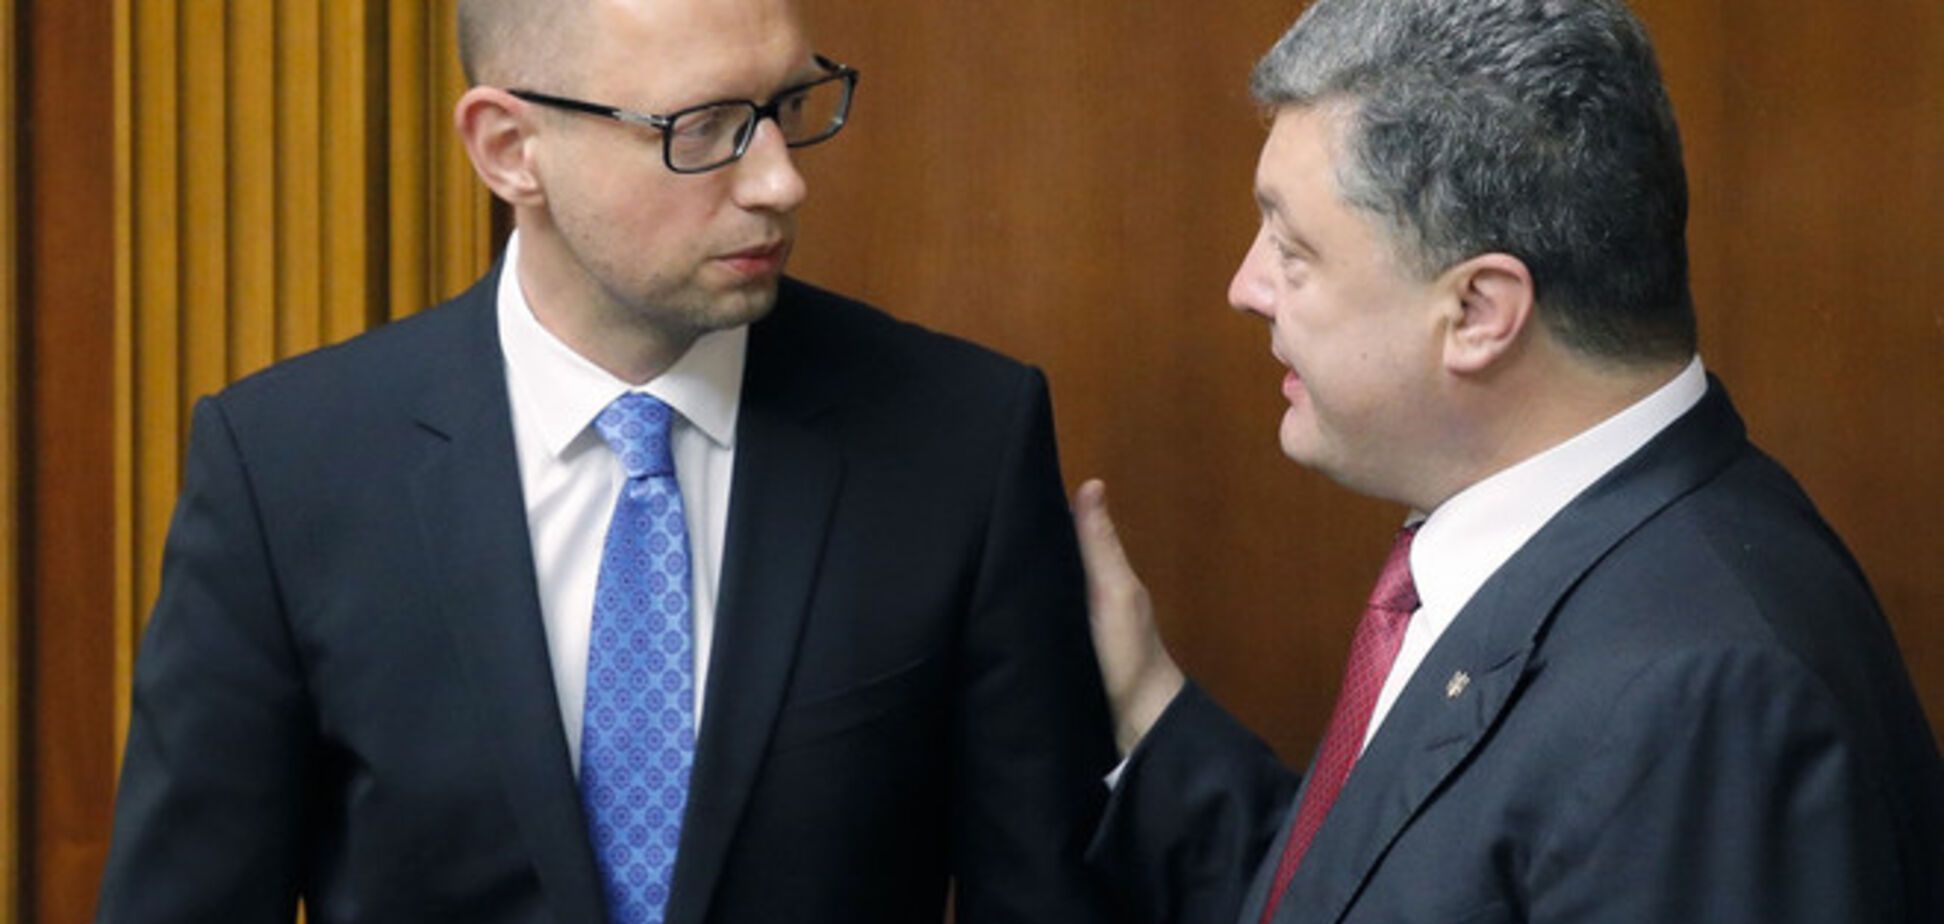 Яценюк выпросил у Порошенко 10 округов, но 'гиен' на выборы поведет отдельно